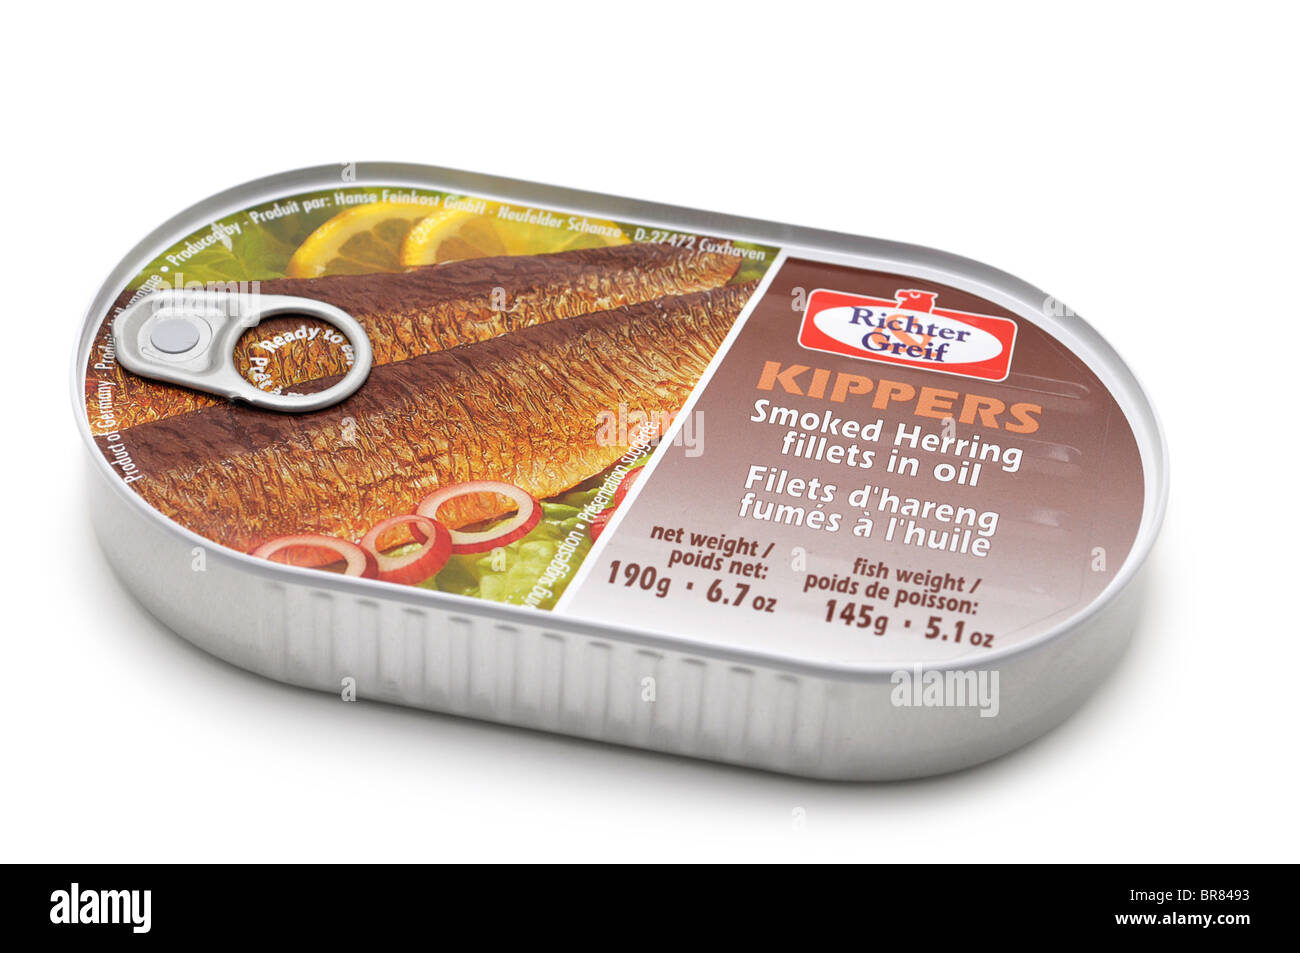 Tinned Kippers (smoked herring) Stock Photo